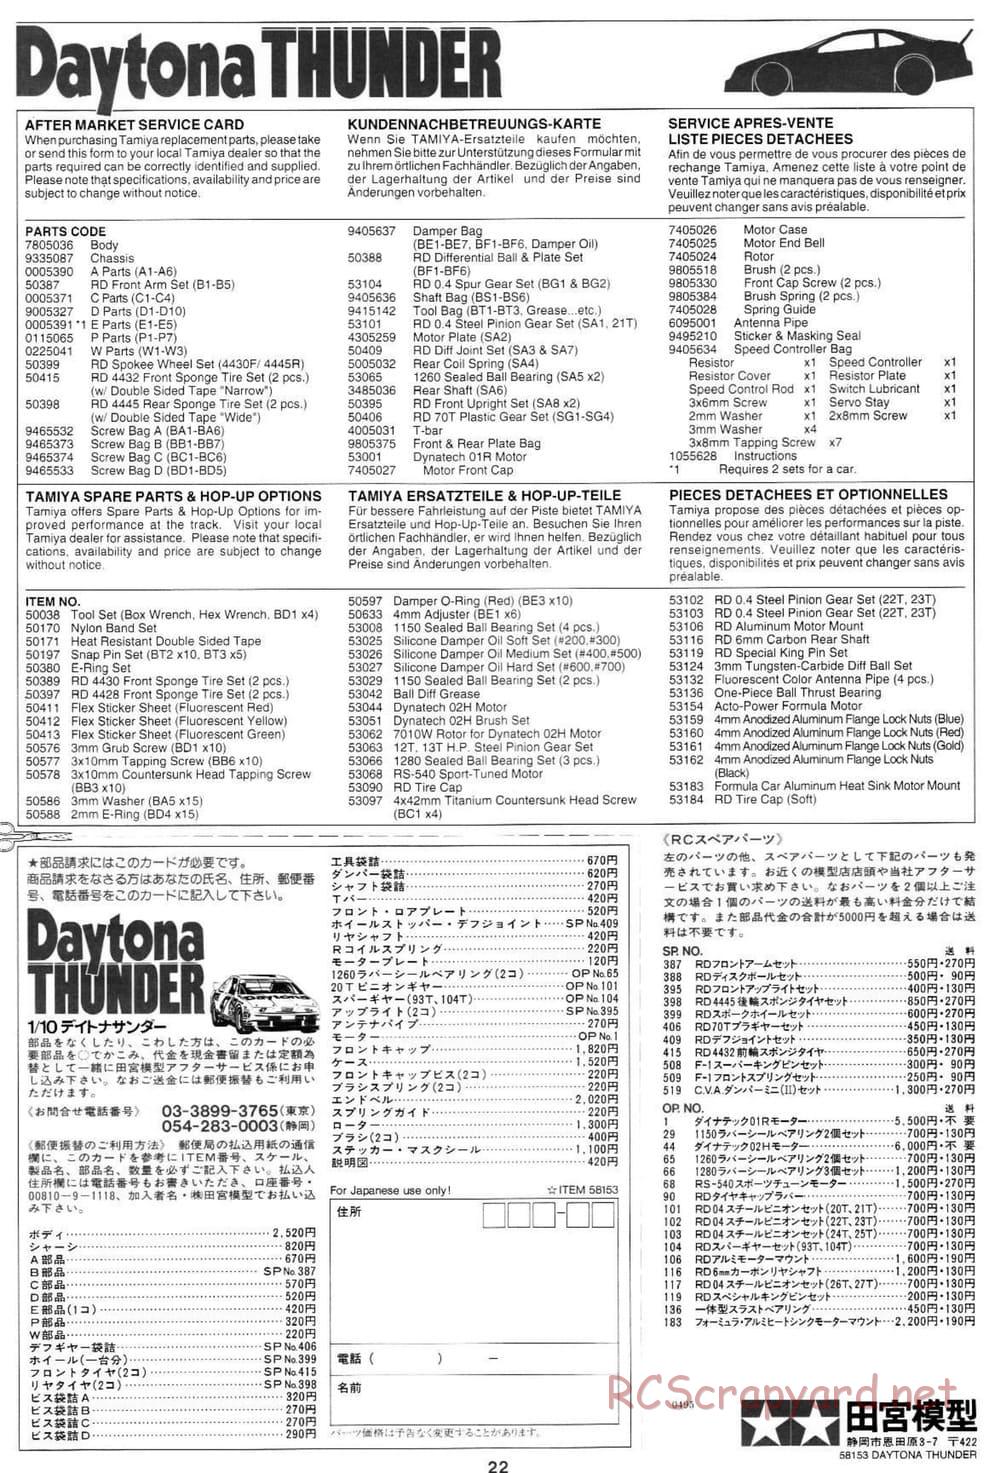 Tamiya - Daytona Thunder - Group-C Chassis - Manual - Page 23